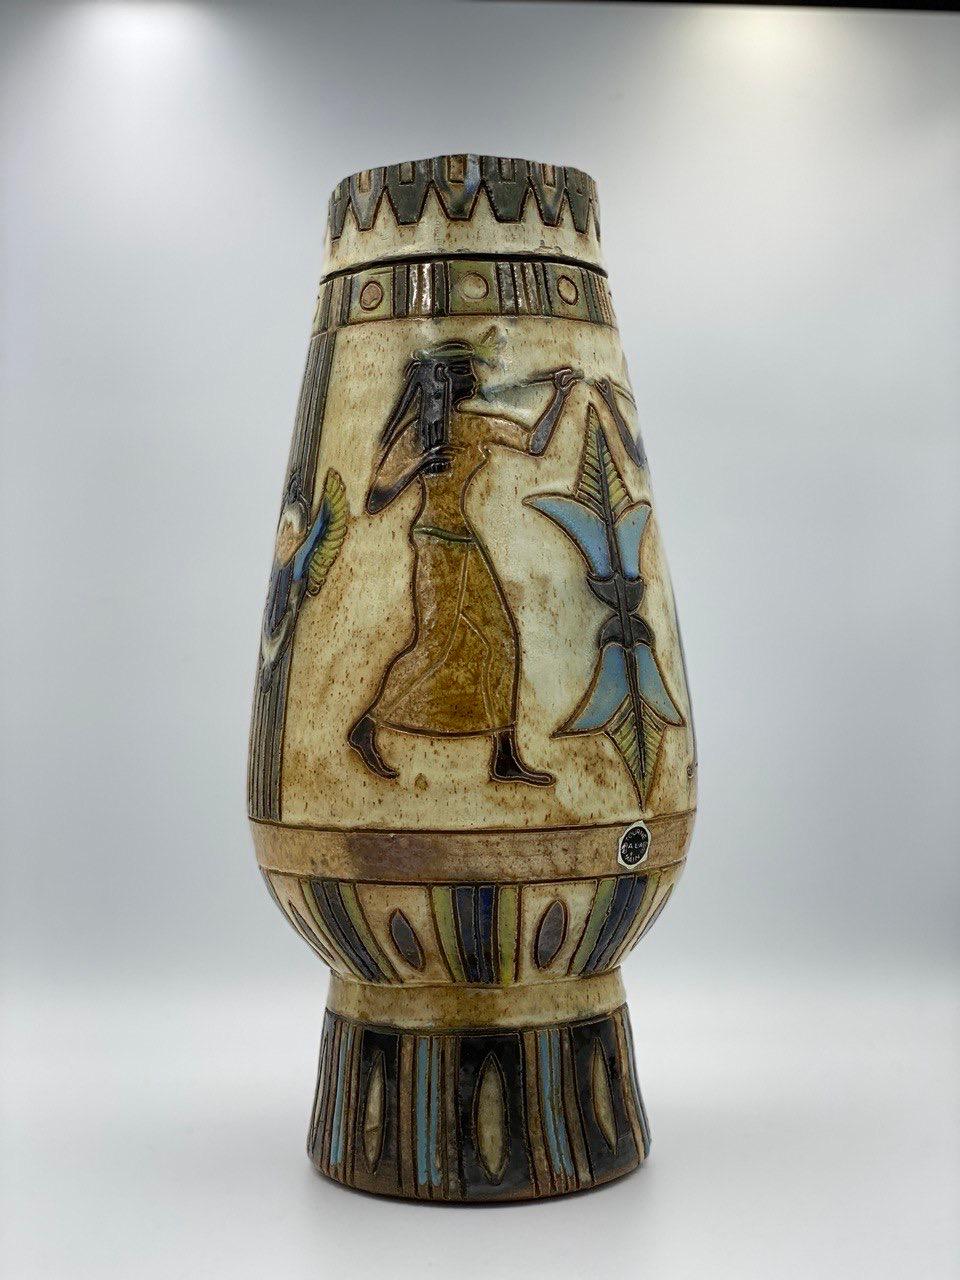 Antique  Signé  Vase en poterie d'art par Roger GUERIN (1896-1954) 

 Ce magnifique vase en poterie d'art est signé Roger Guerin, un potier belge. Les couleurs sont des nuances de tan et de brun chocolat. Recouvert de glaçure à certains endroits. Le